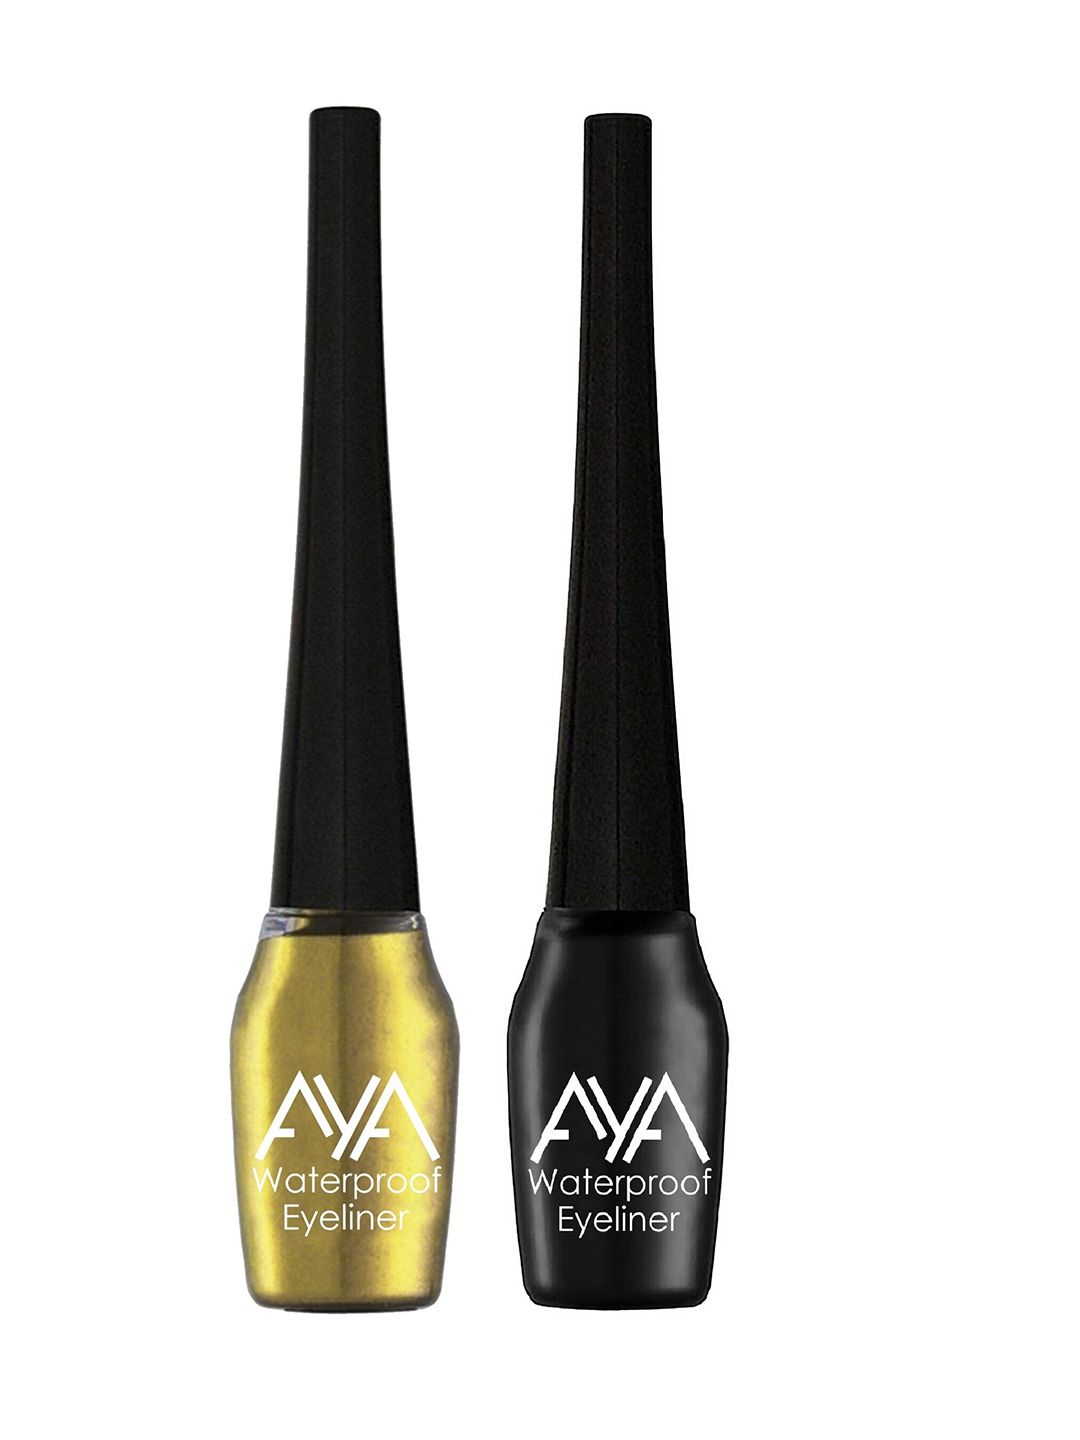 AYA Set of 2 Waterproof Liquid Eyeliner- Black and Golden Price in India